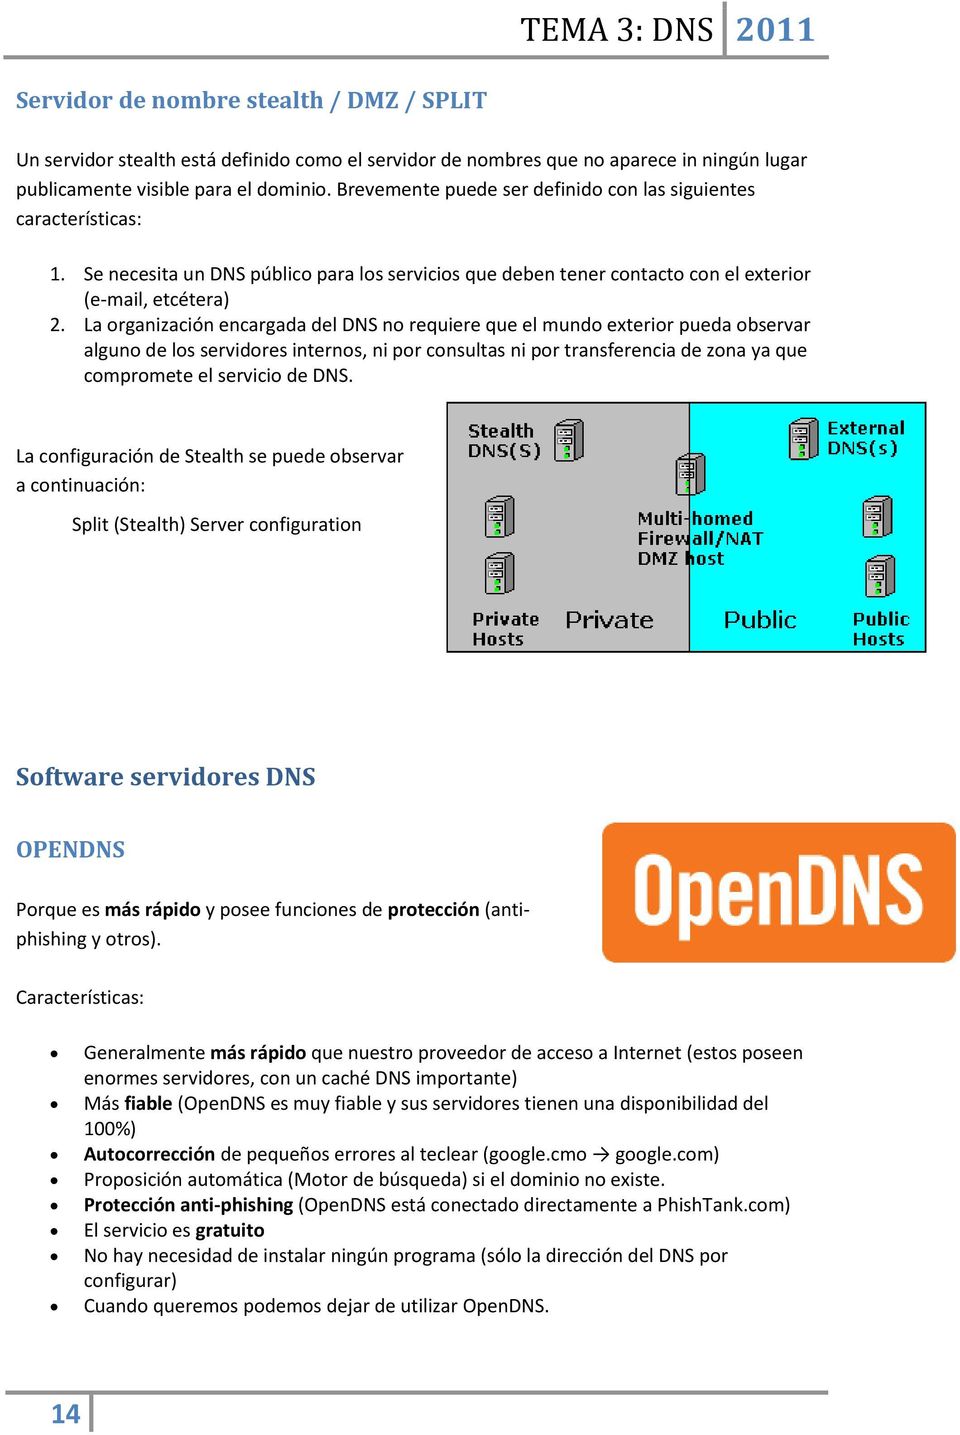 La organización encargada del DNS no requiere que el mundo exterior pueda observar alguno de los servidores internos, ni por consultas ni por transferencia de zona ya que compromete el servicio de